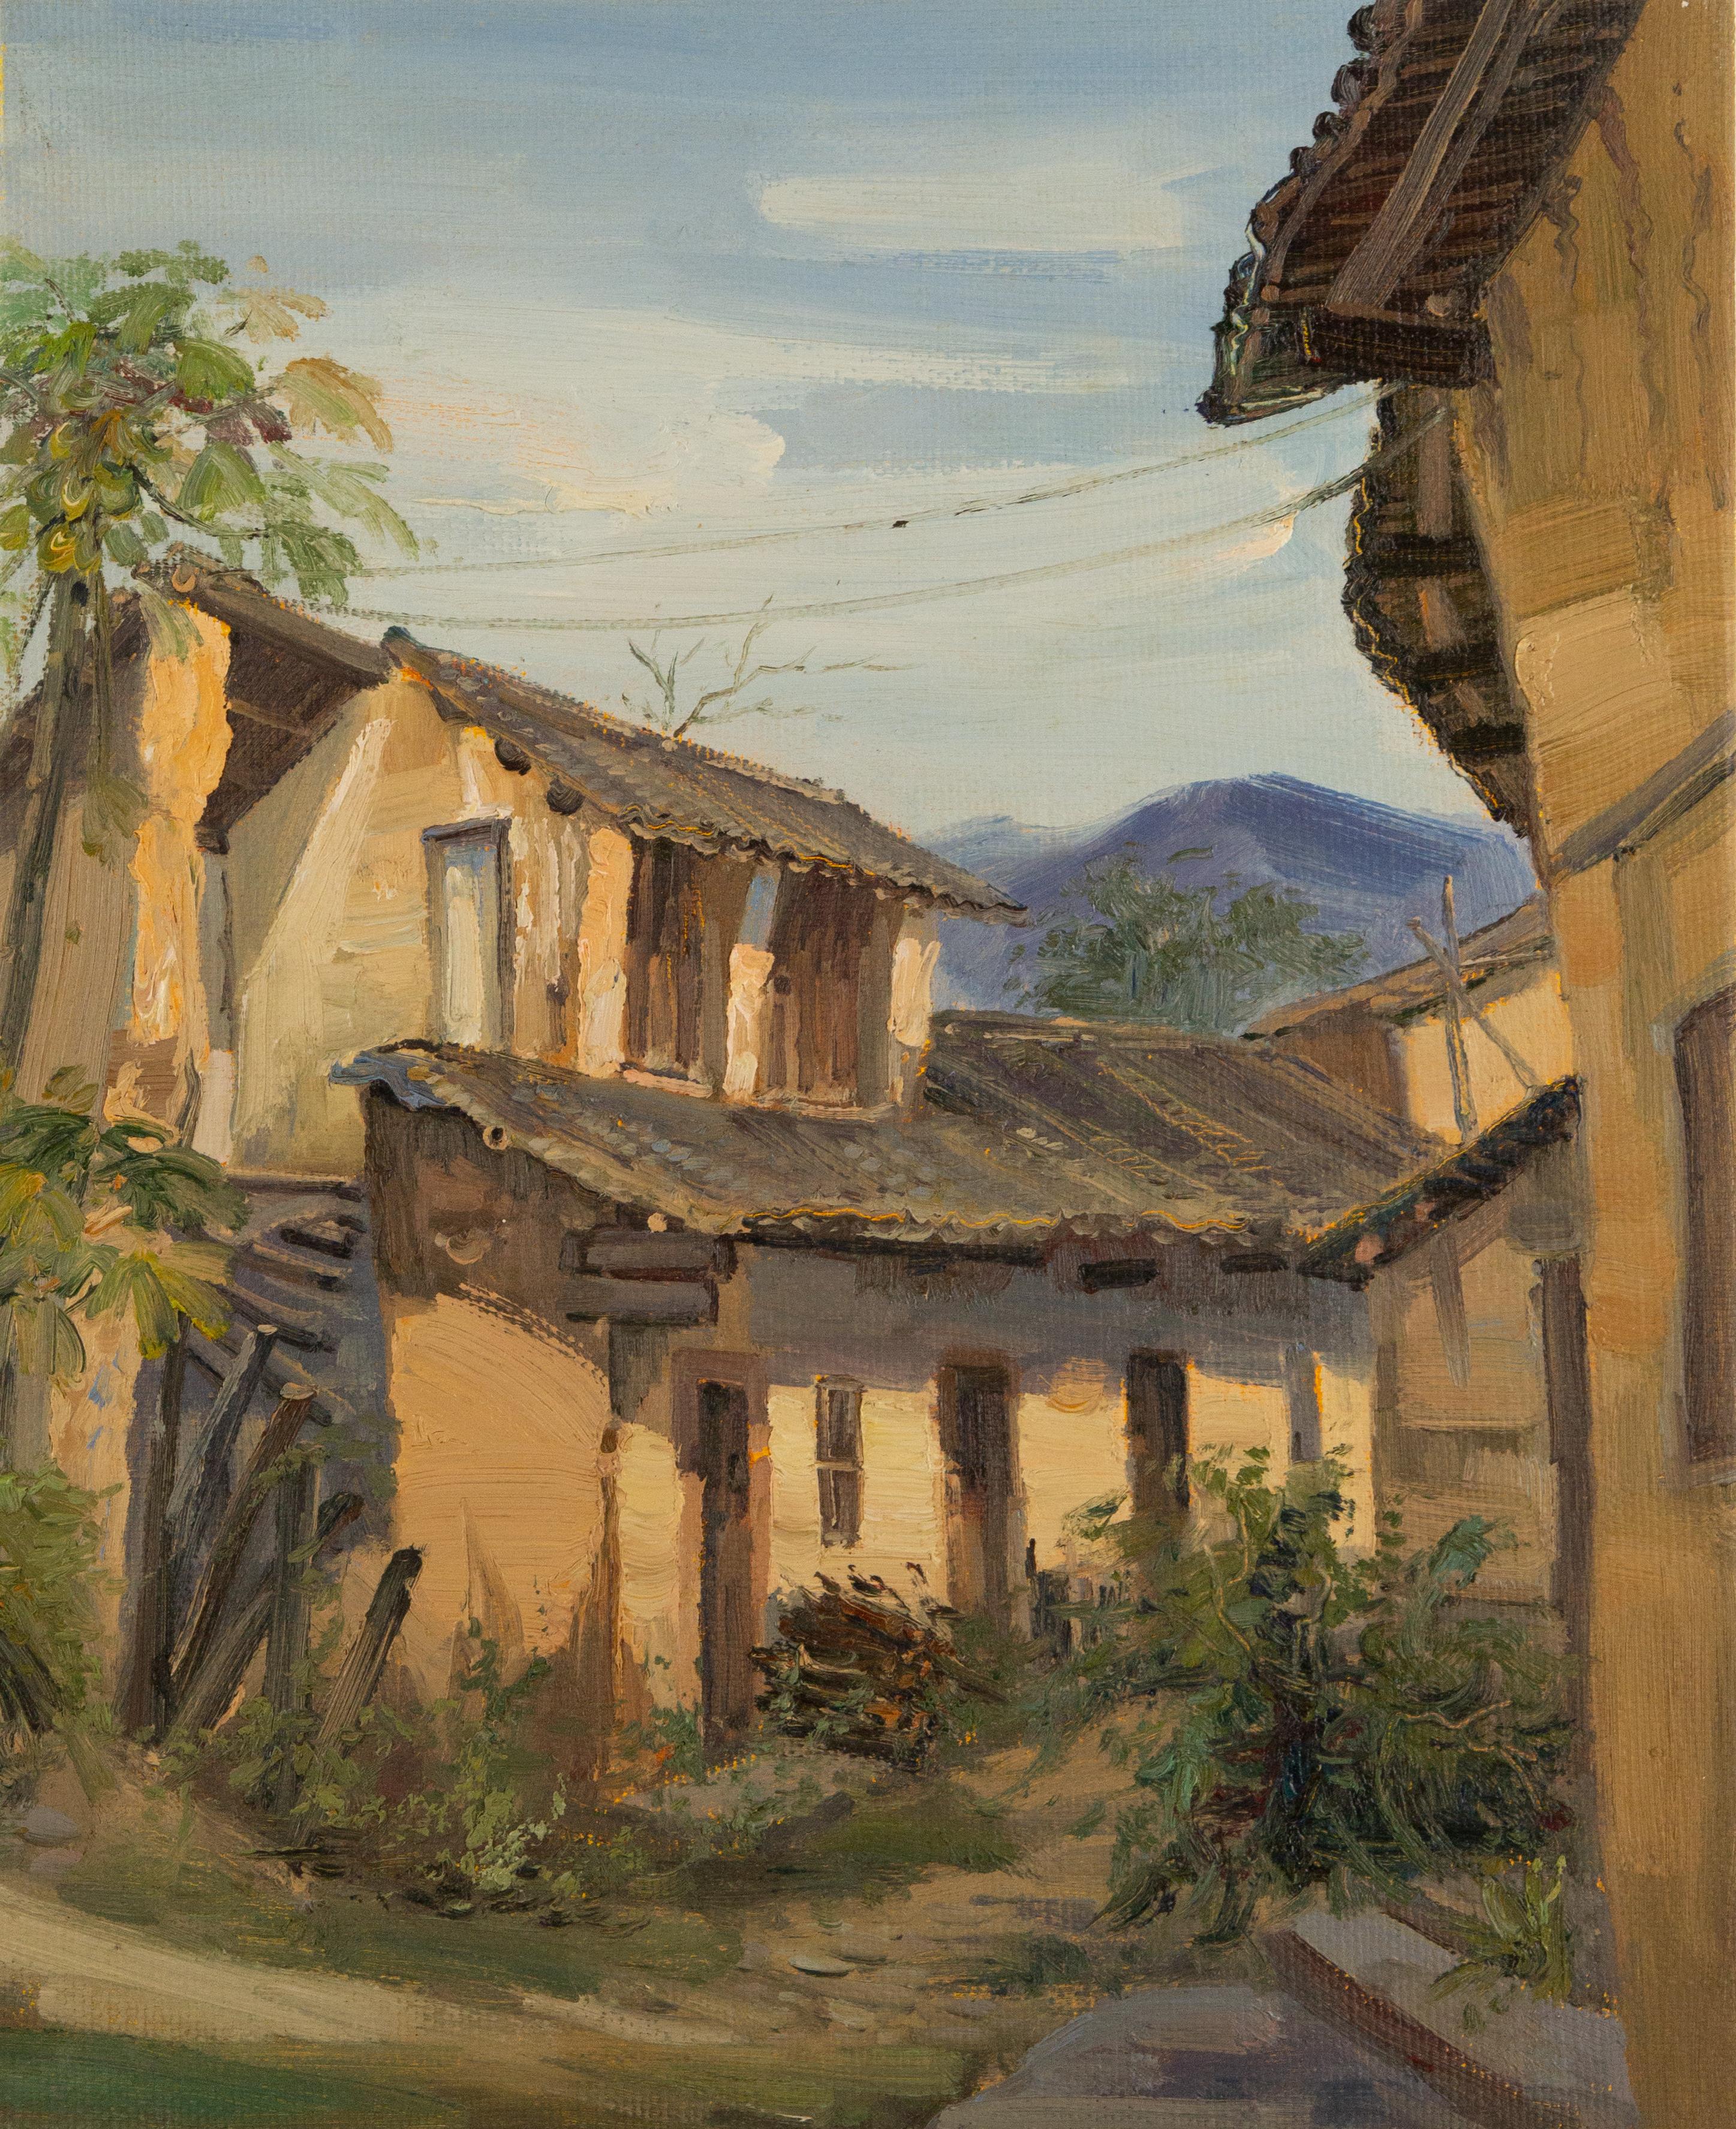 Wengui Huang Landscape Original Oil On Canvas "Untitled"